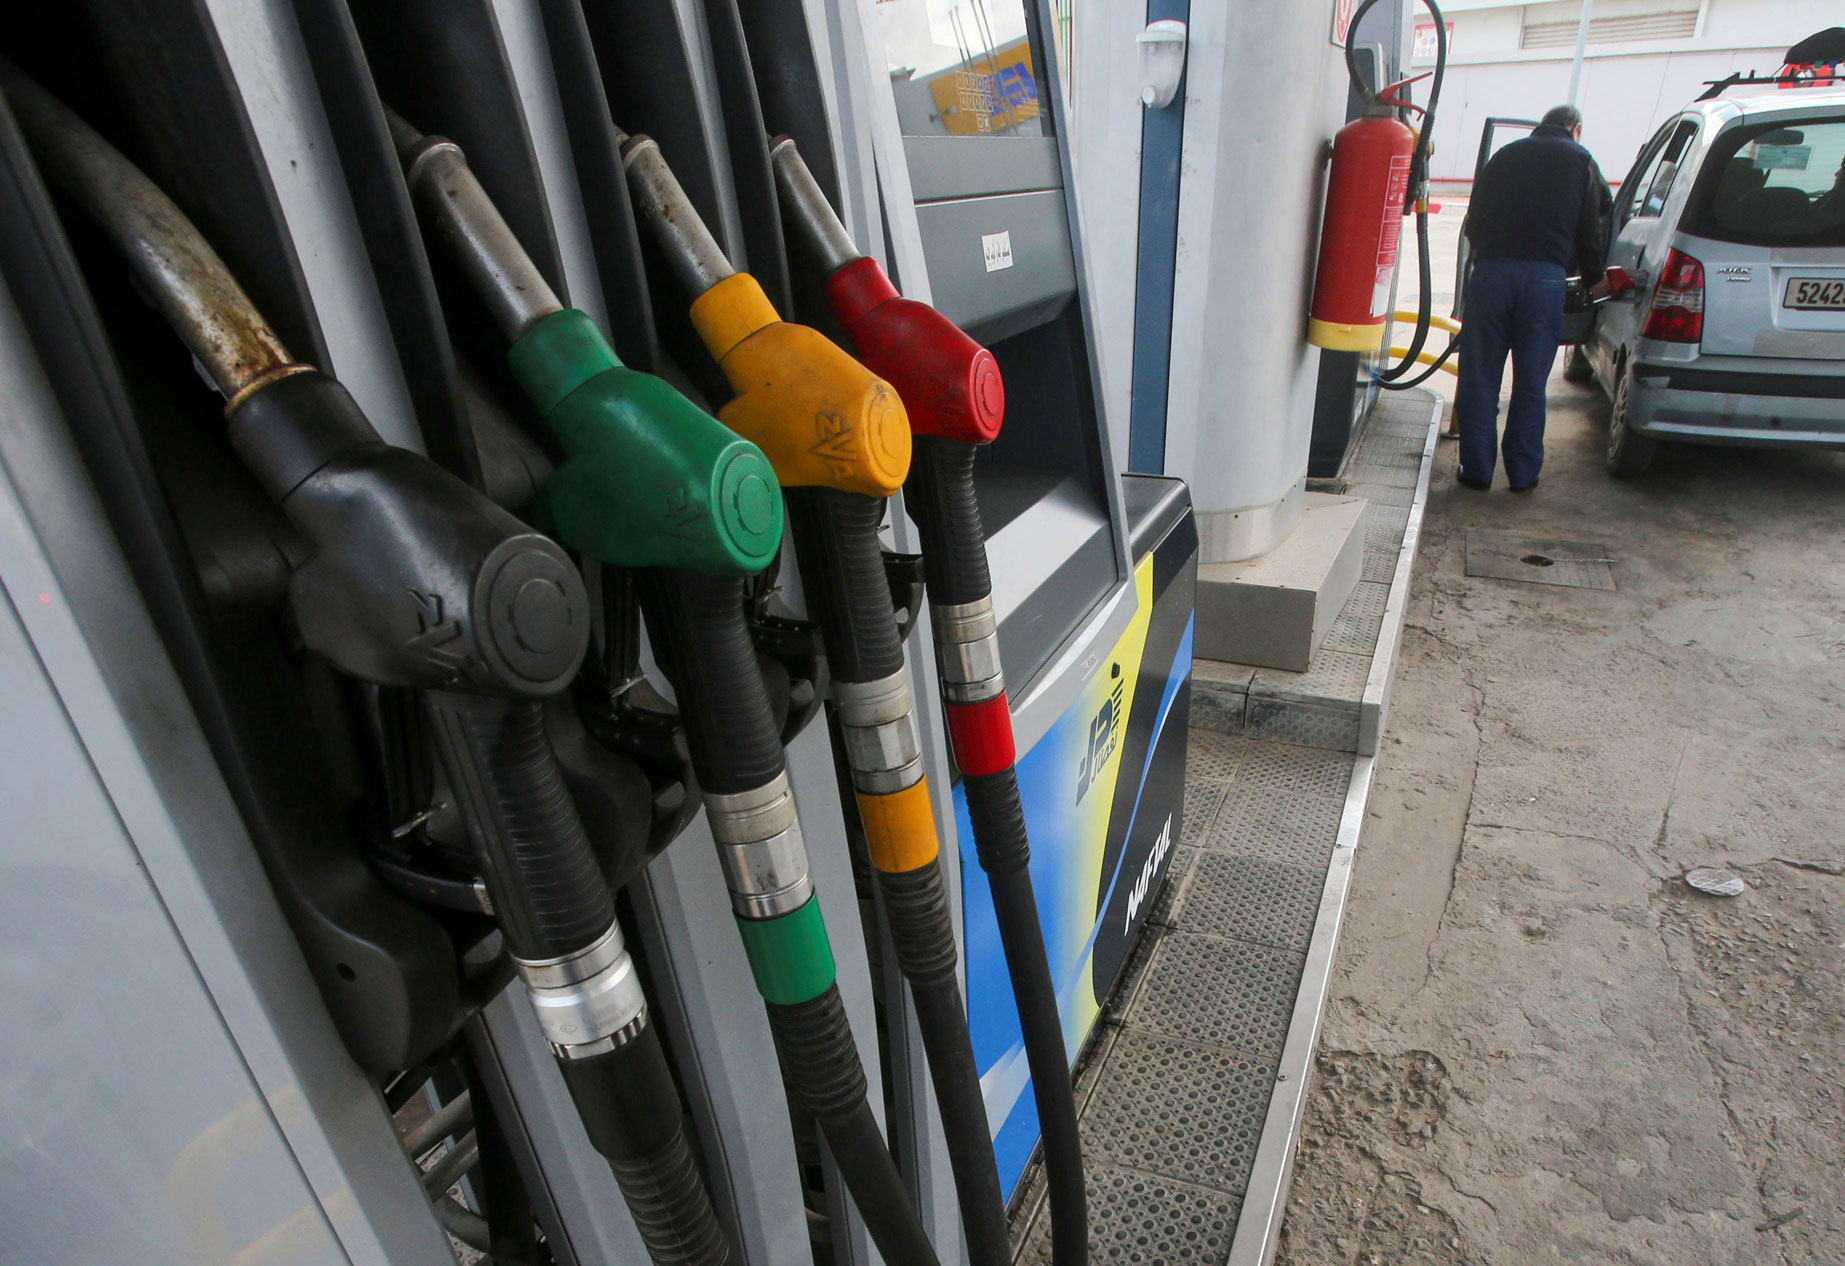 الترفيع في أسعار الوقود مؤشر قوي على حدة الأزمة الاقتصادية في الجزائر